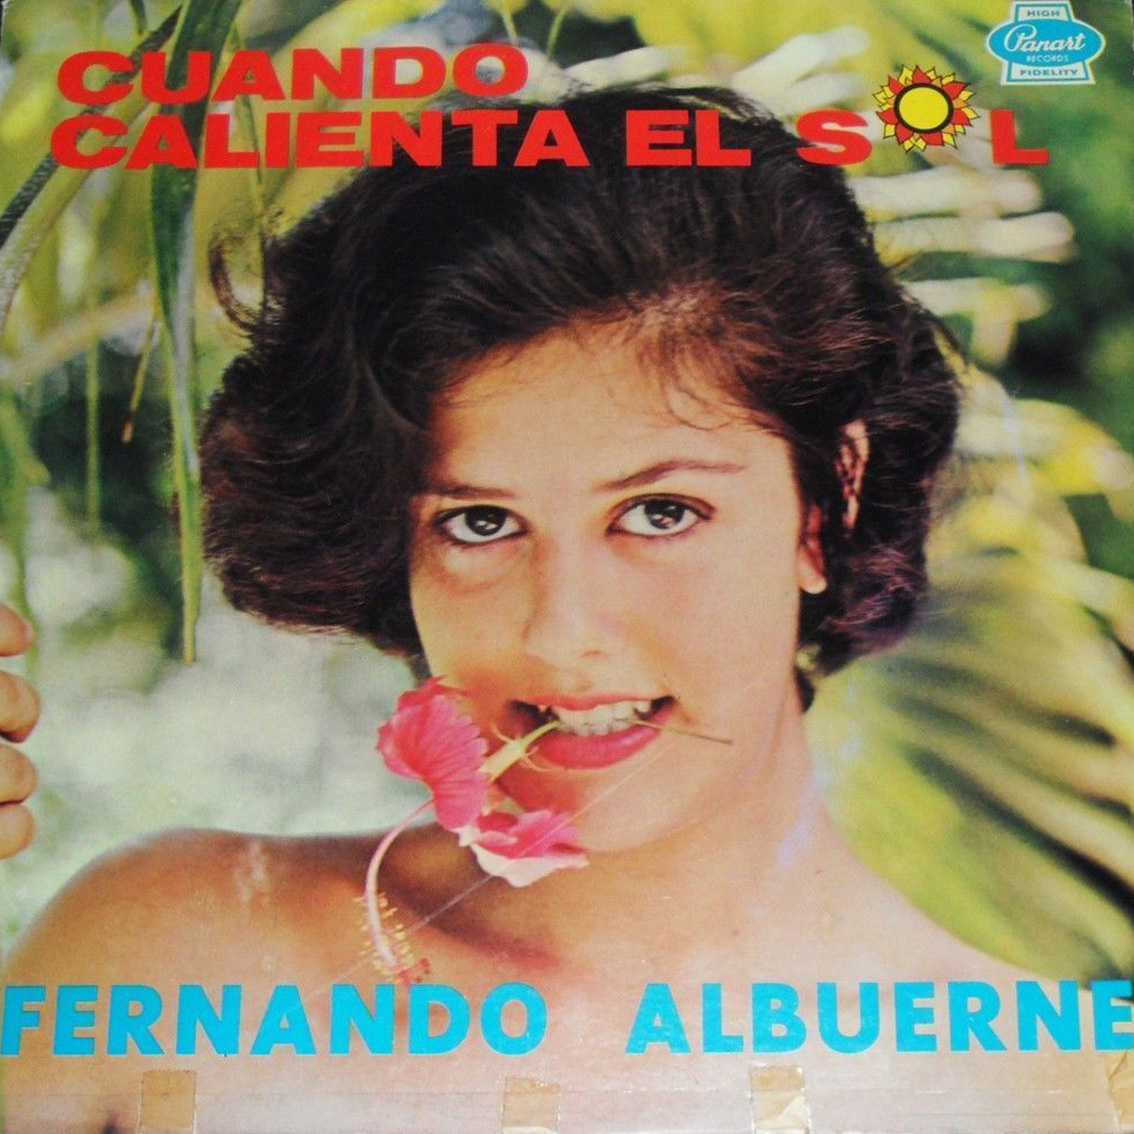 Tropicales Del Recuerdo Fernando Albuerne Cuando Calienta El Sol